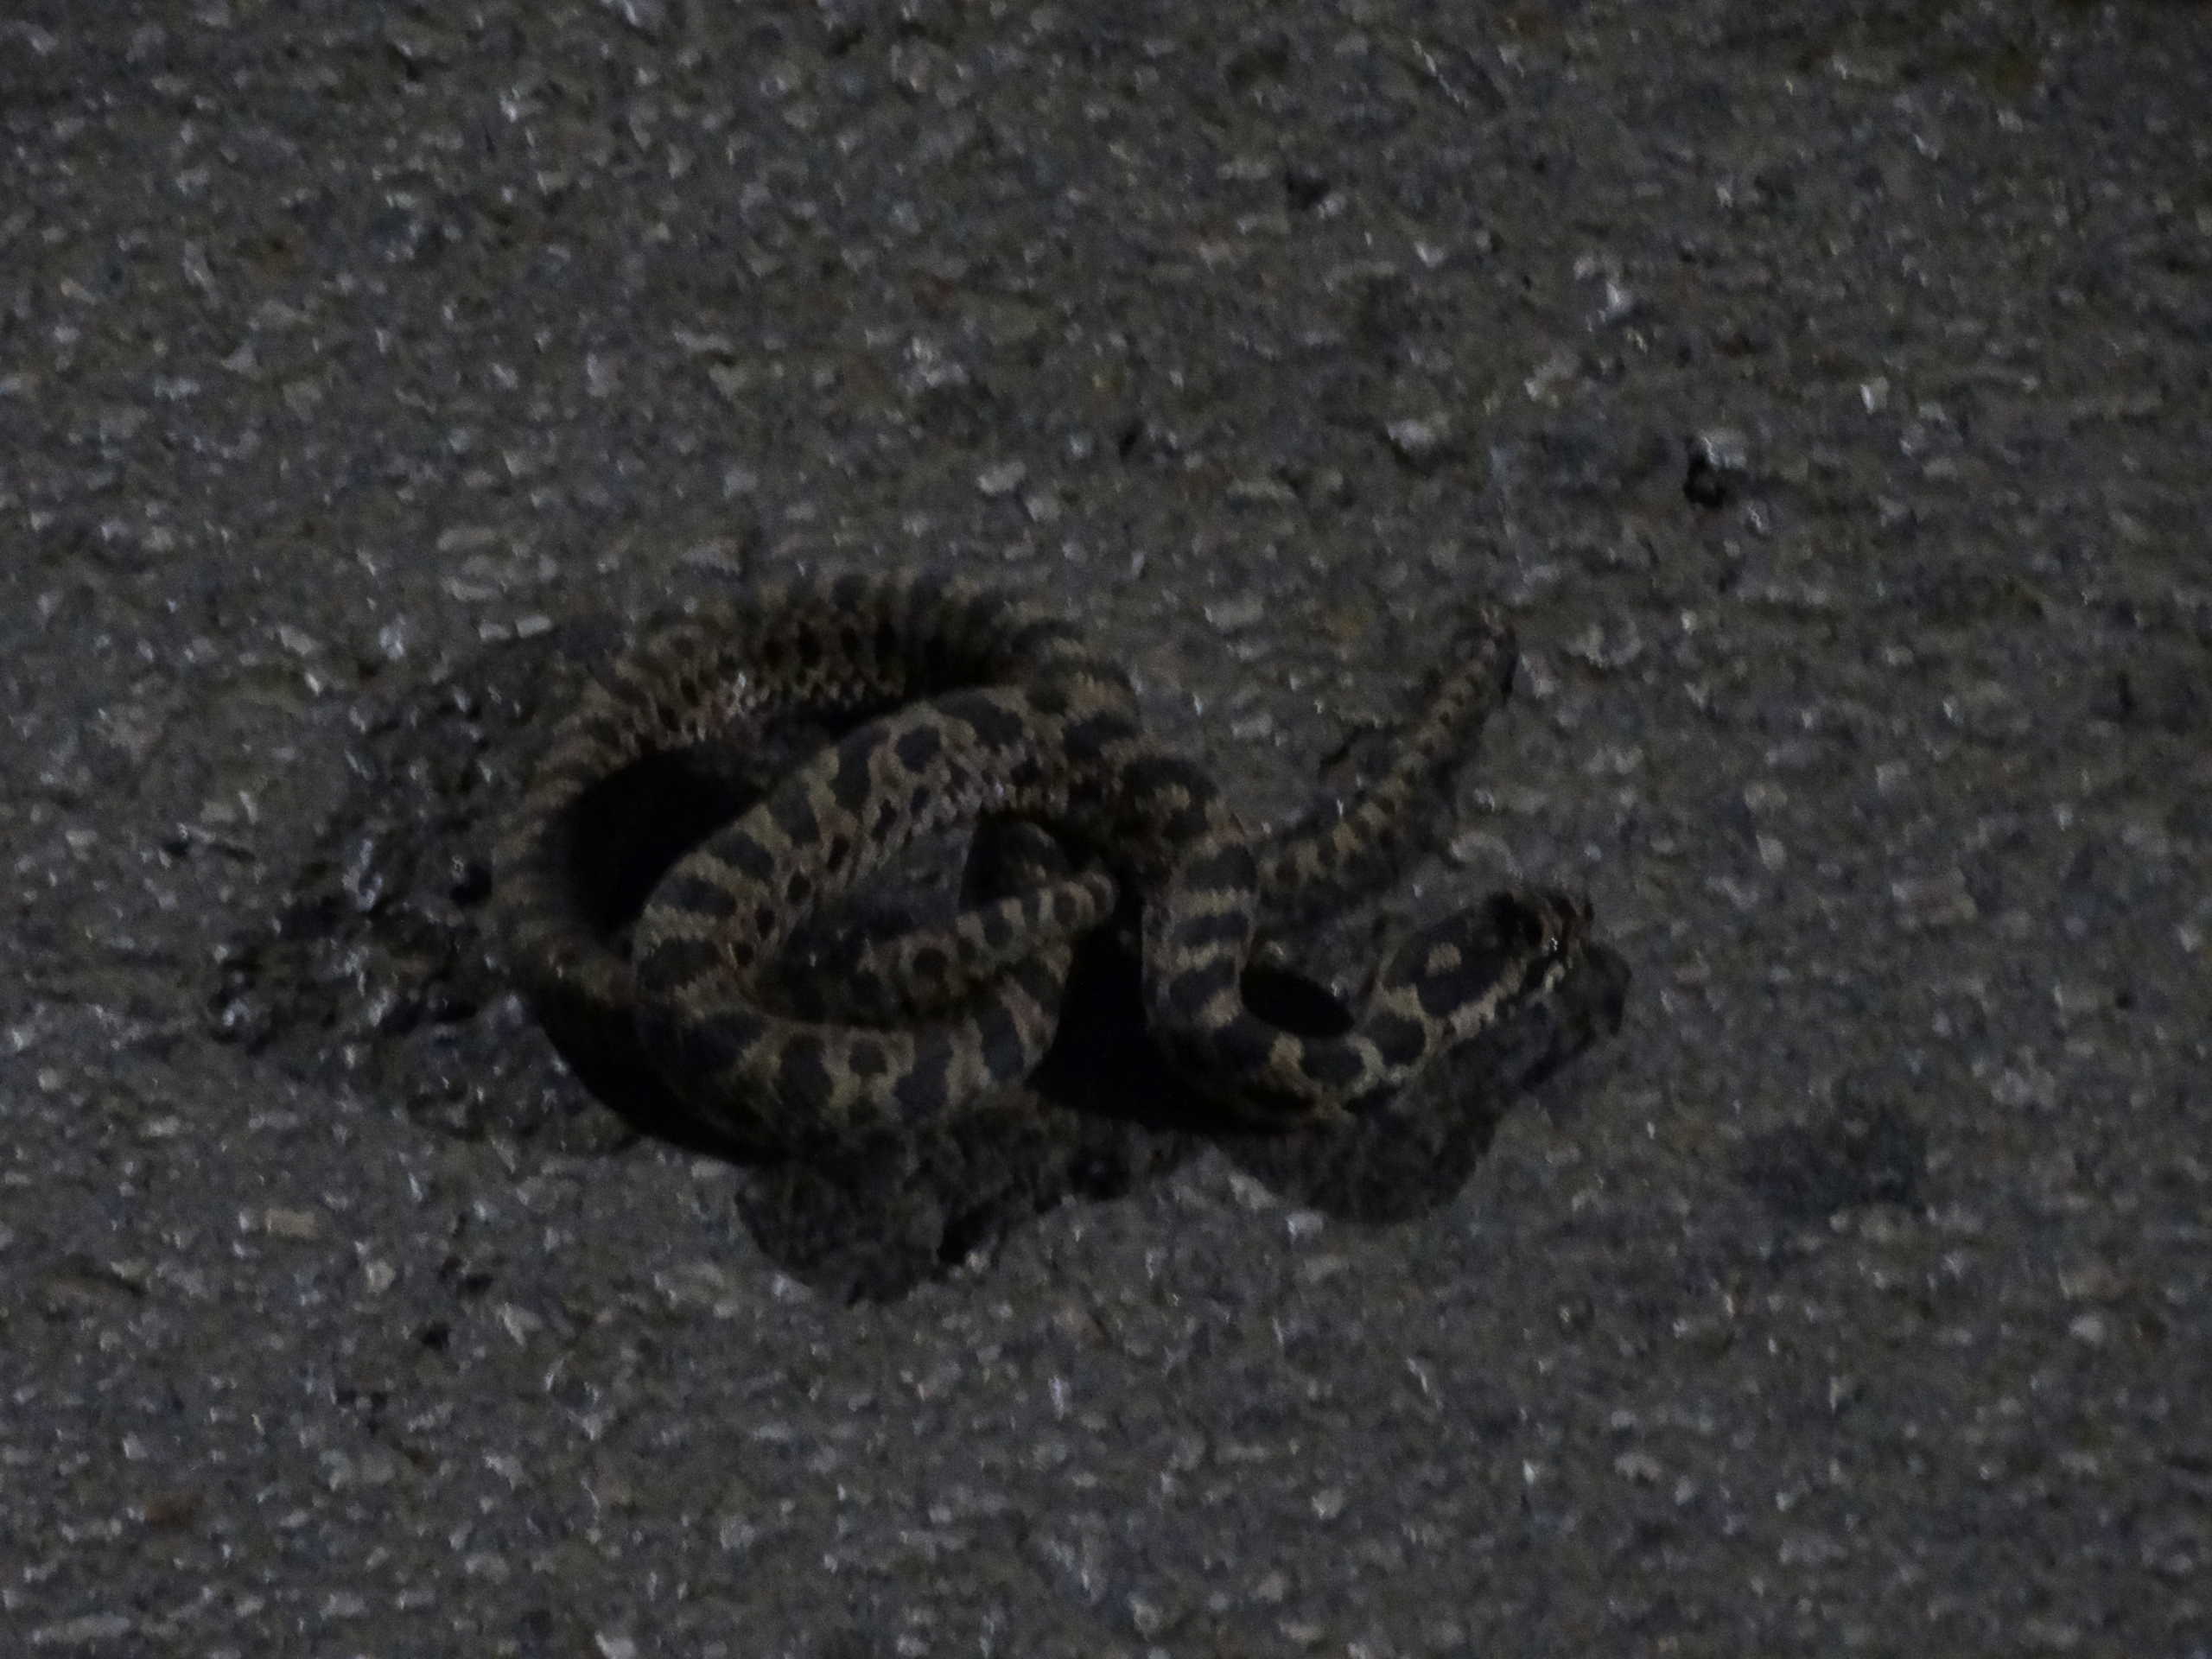 Λάρισα: Στη μέση του δρόμου αυτό το φίδι! Πλησίασαν και είδαν αυτές τις εικόνες (Φωτό)